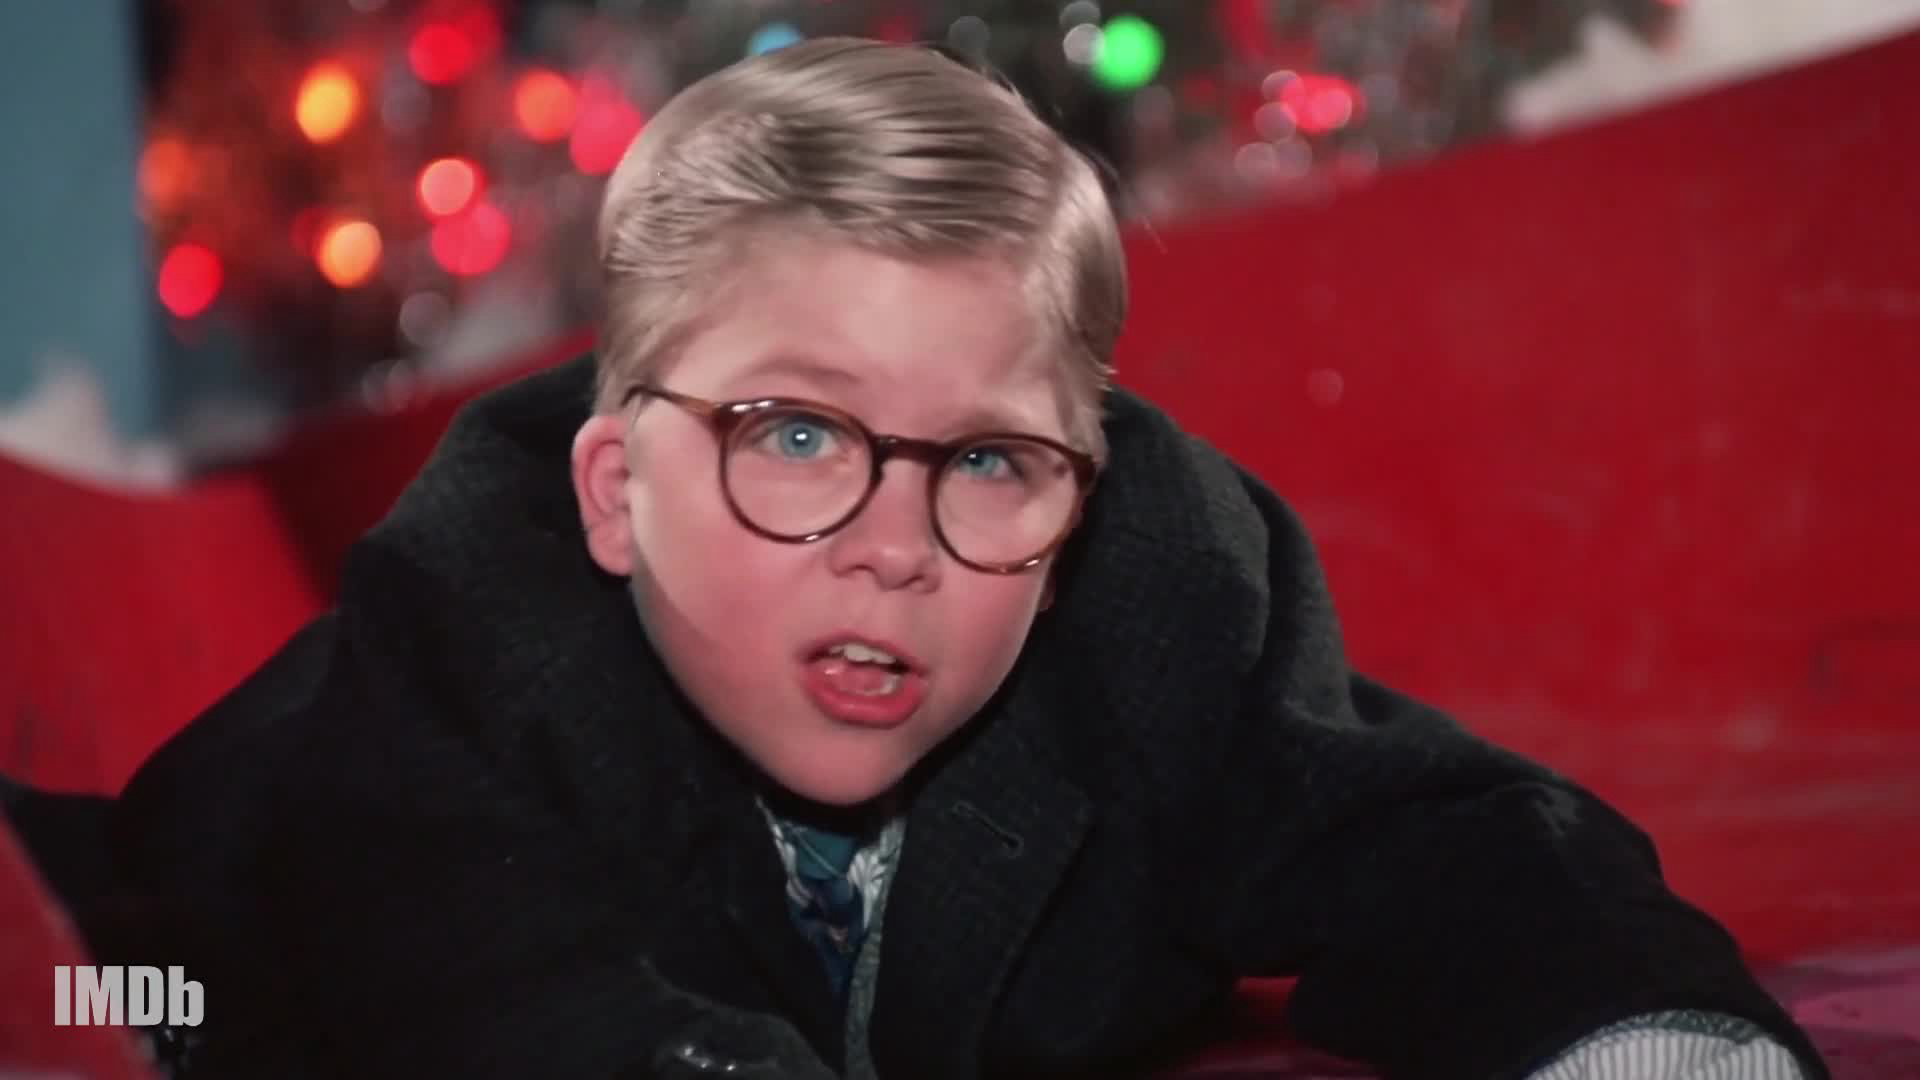 Chuyện Giáng Sinh - A Christmas Story (1983)